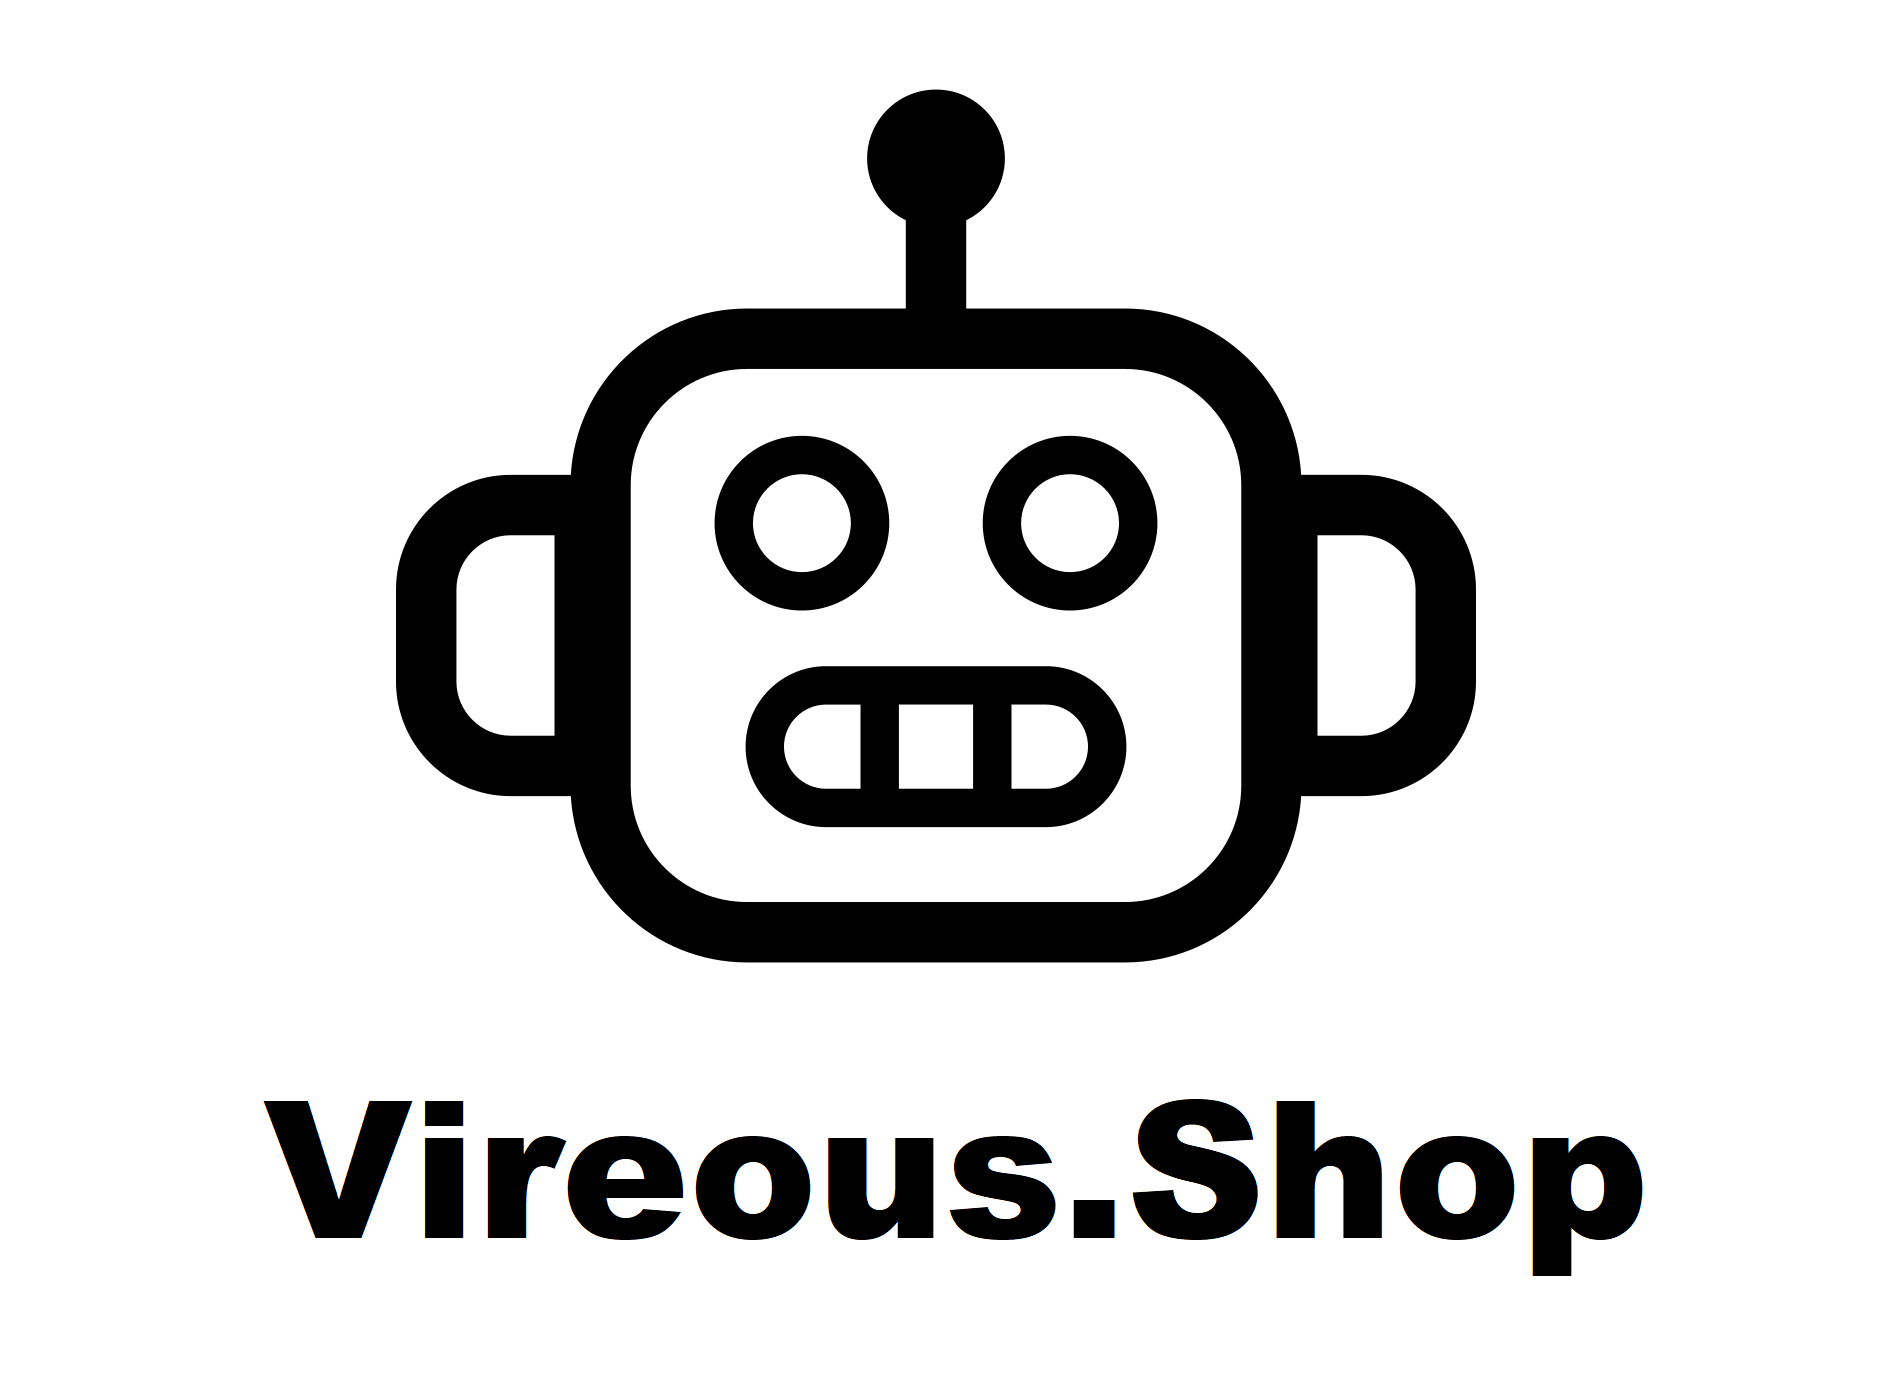 Vireous.Shop